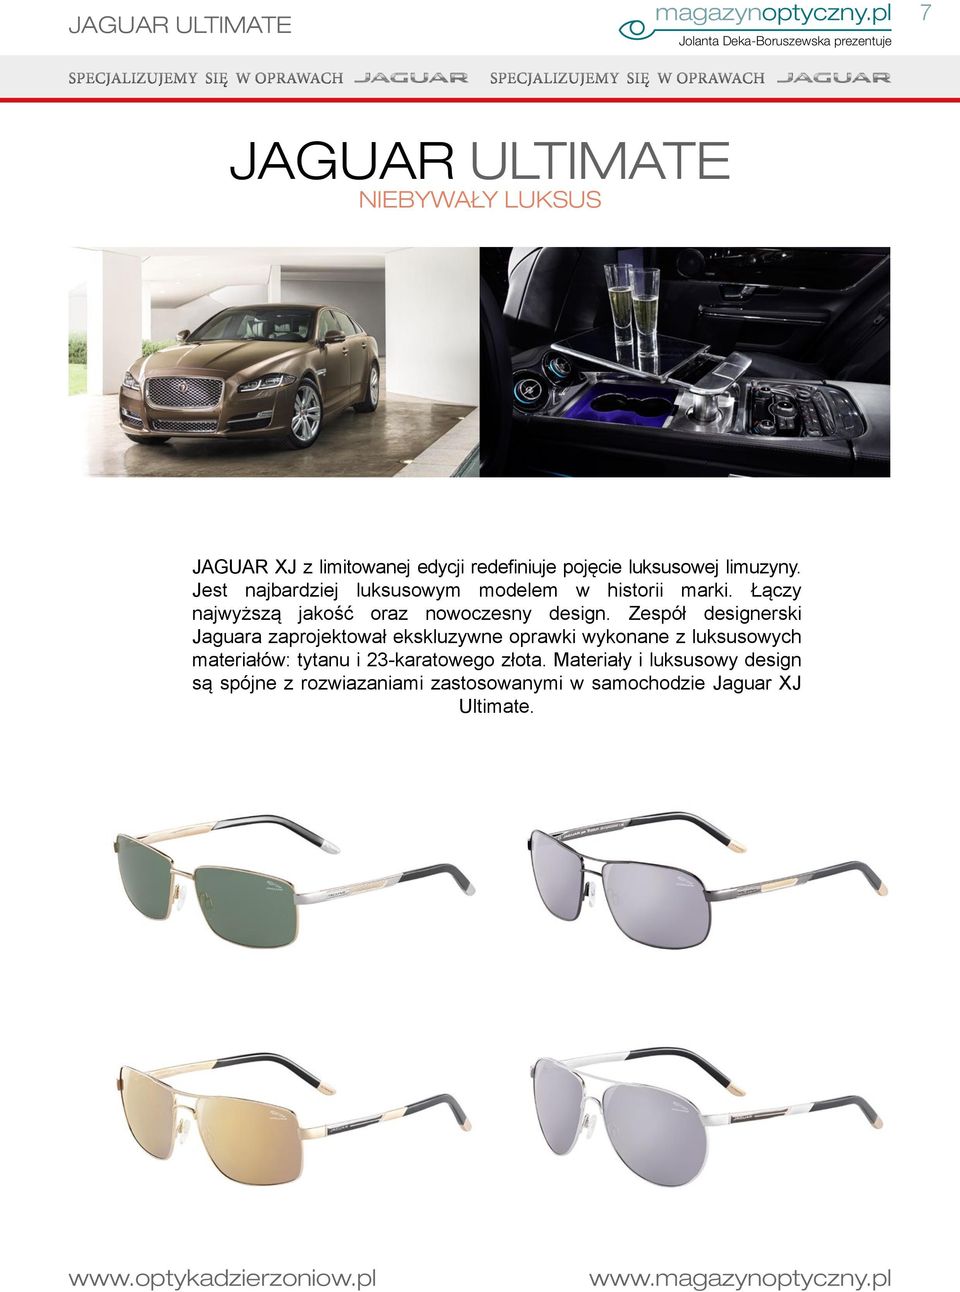 Zespół designerski Jaguara zaprojektował ekskluzywne oprawki wykonane z luksusowych materiałów: tytanu i